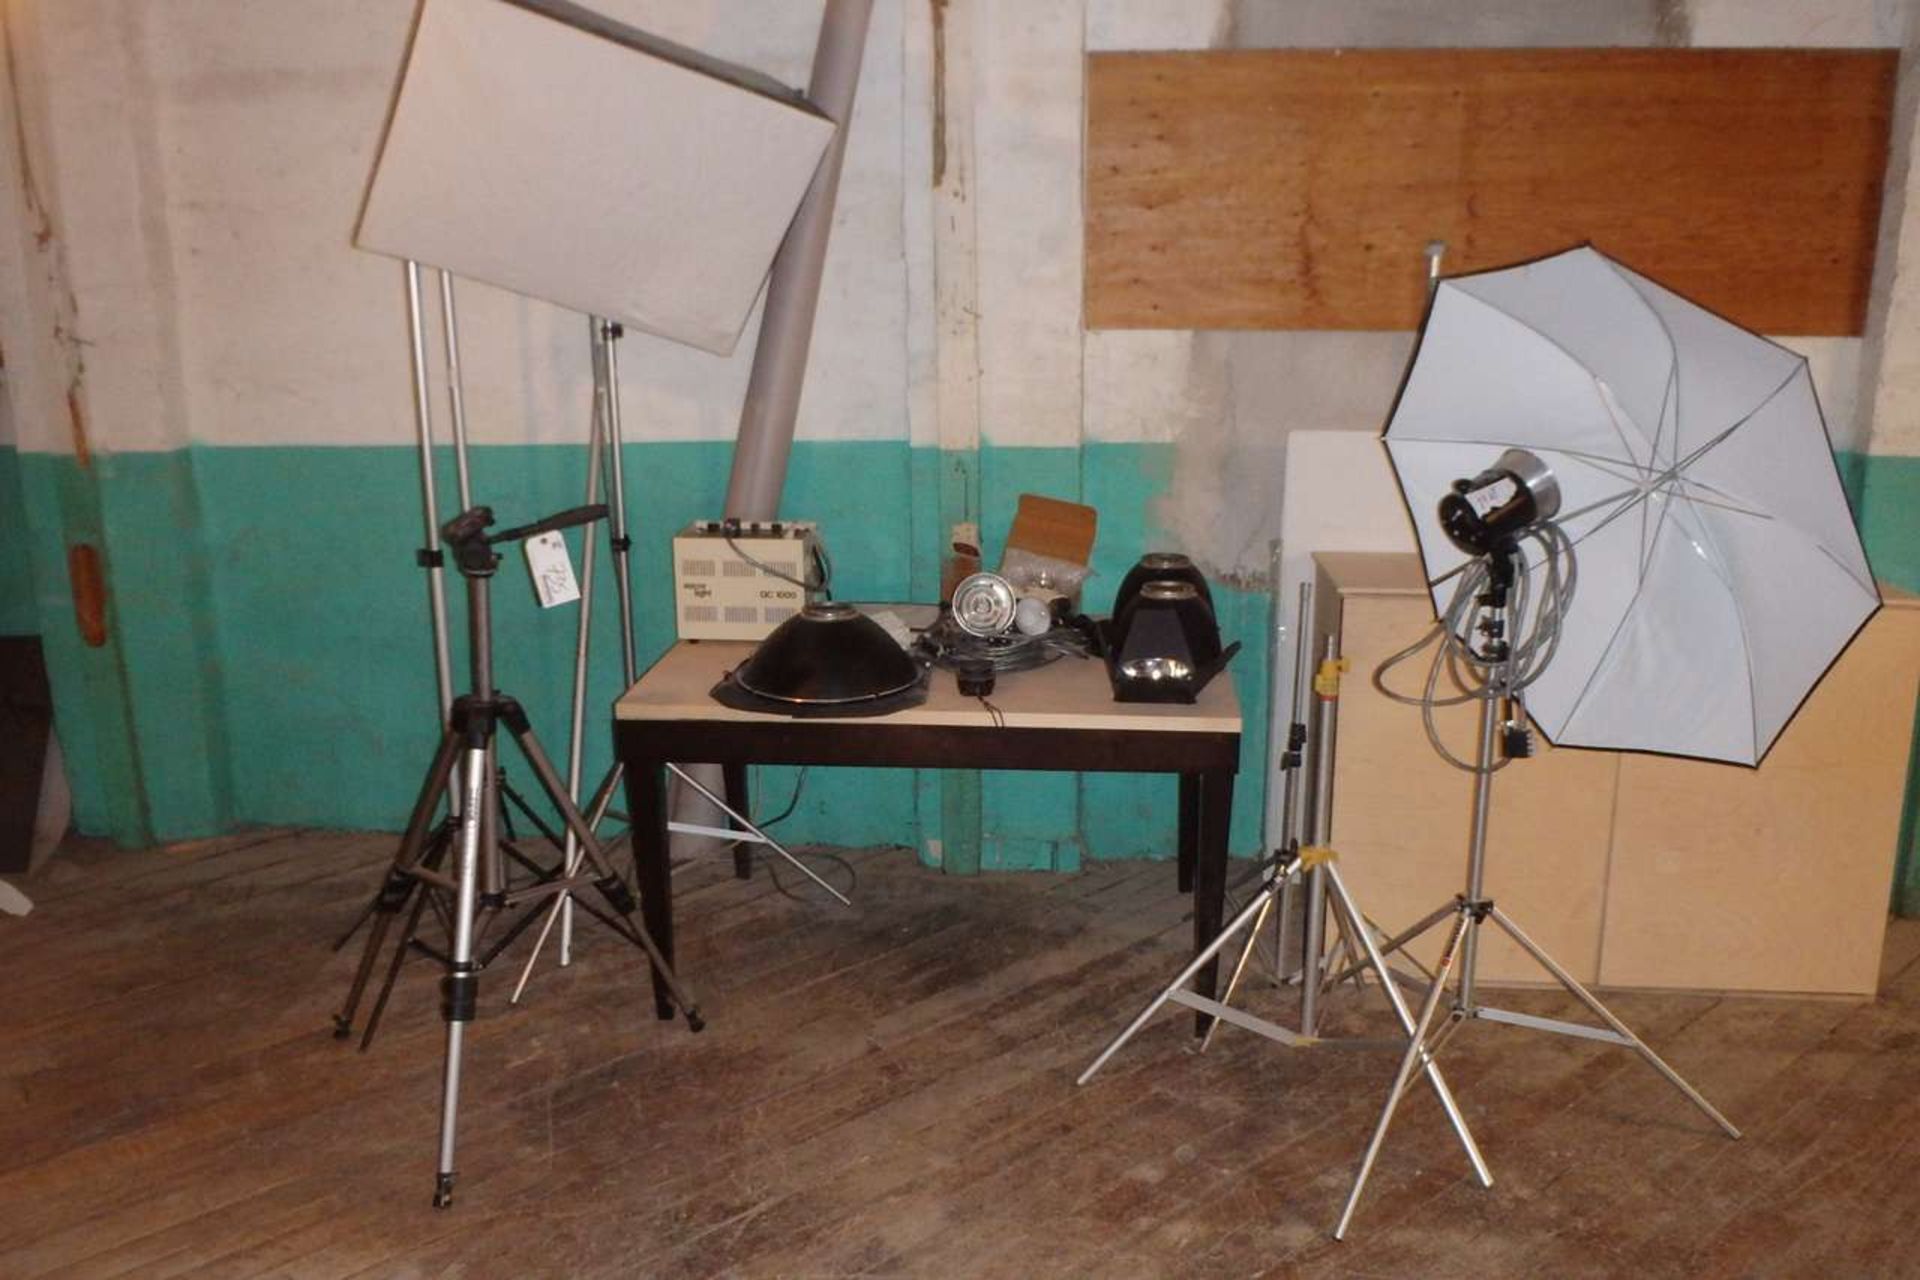 Quantity of Photographic Studio Equipment